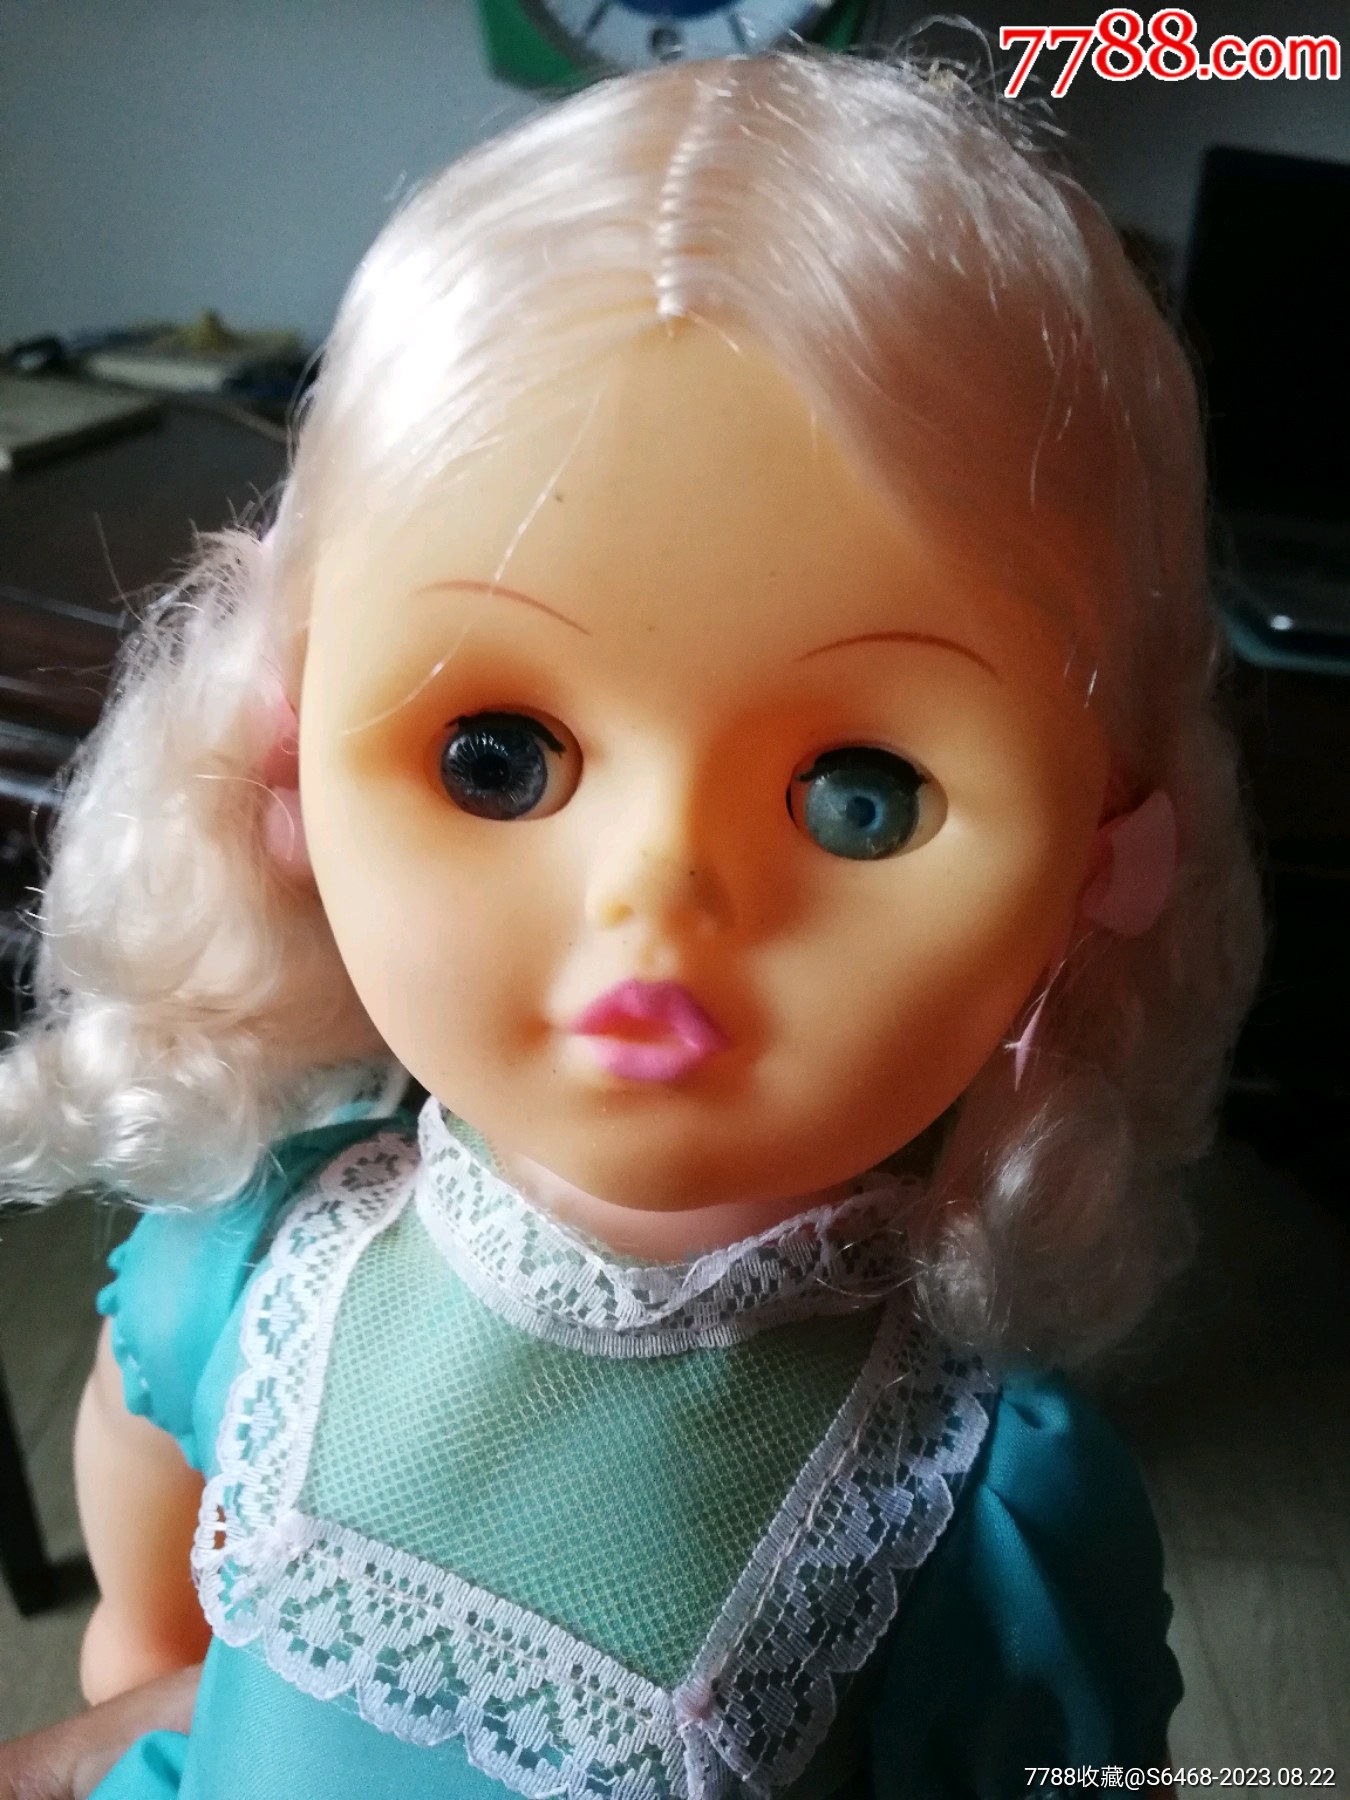 可爱的娃娃脸 免费图片 - Public Domain Pictures